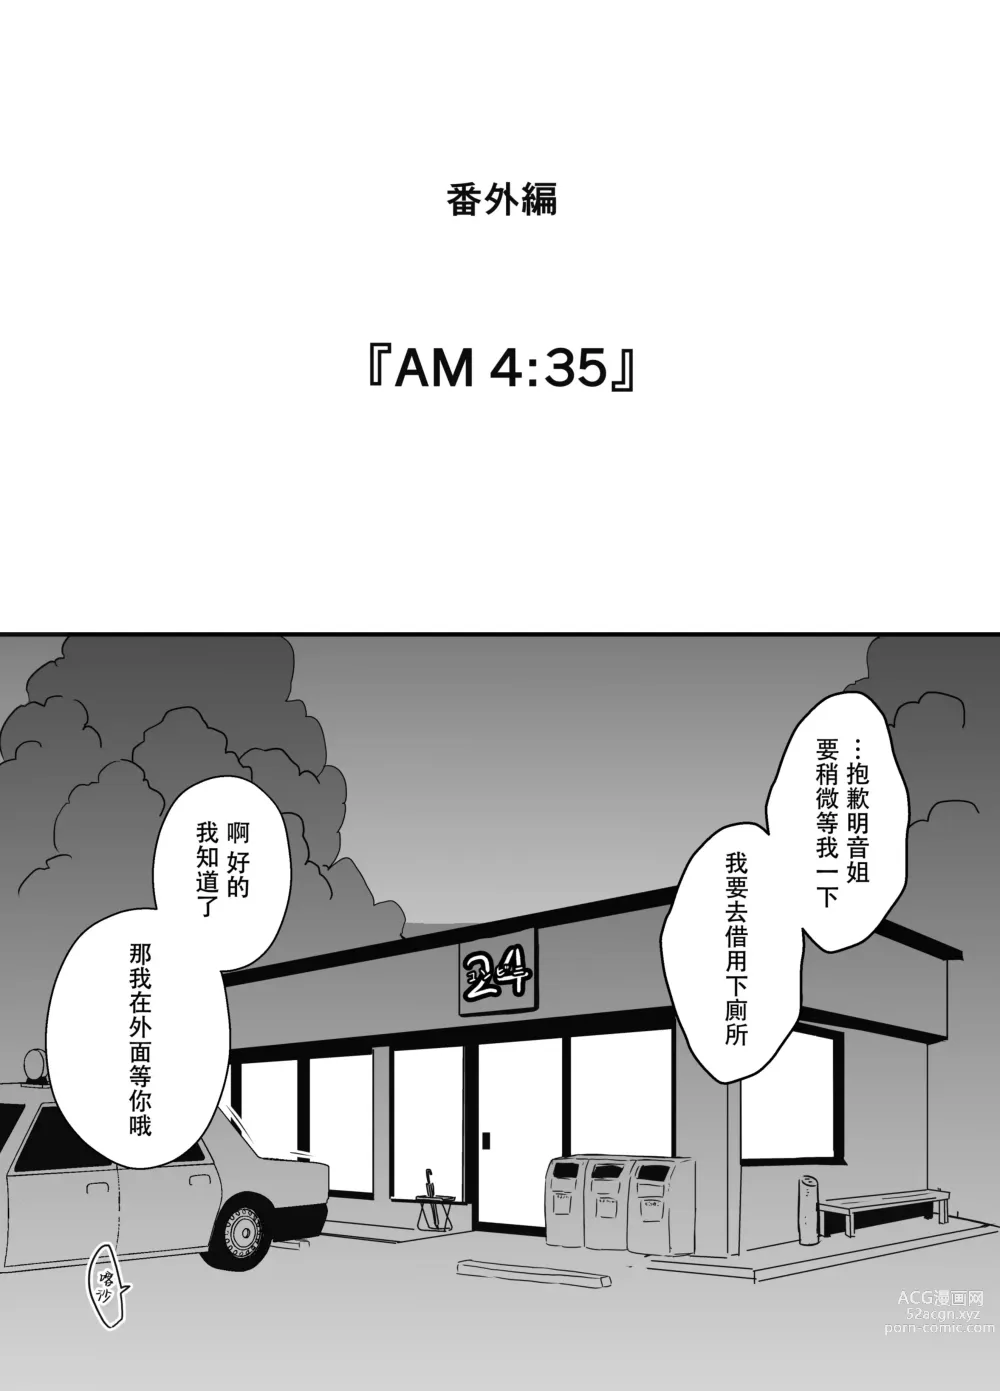 Page 70 of doujinshi Giri no Ane to no 7-kakan Seikatsu - 6